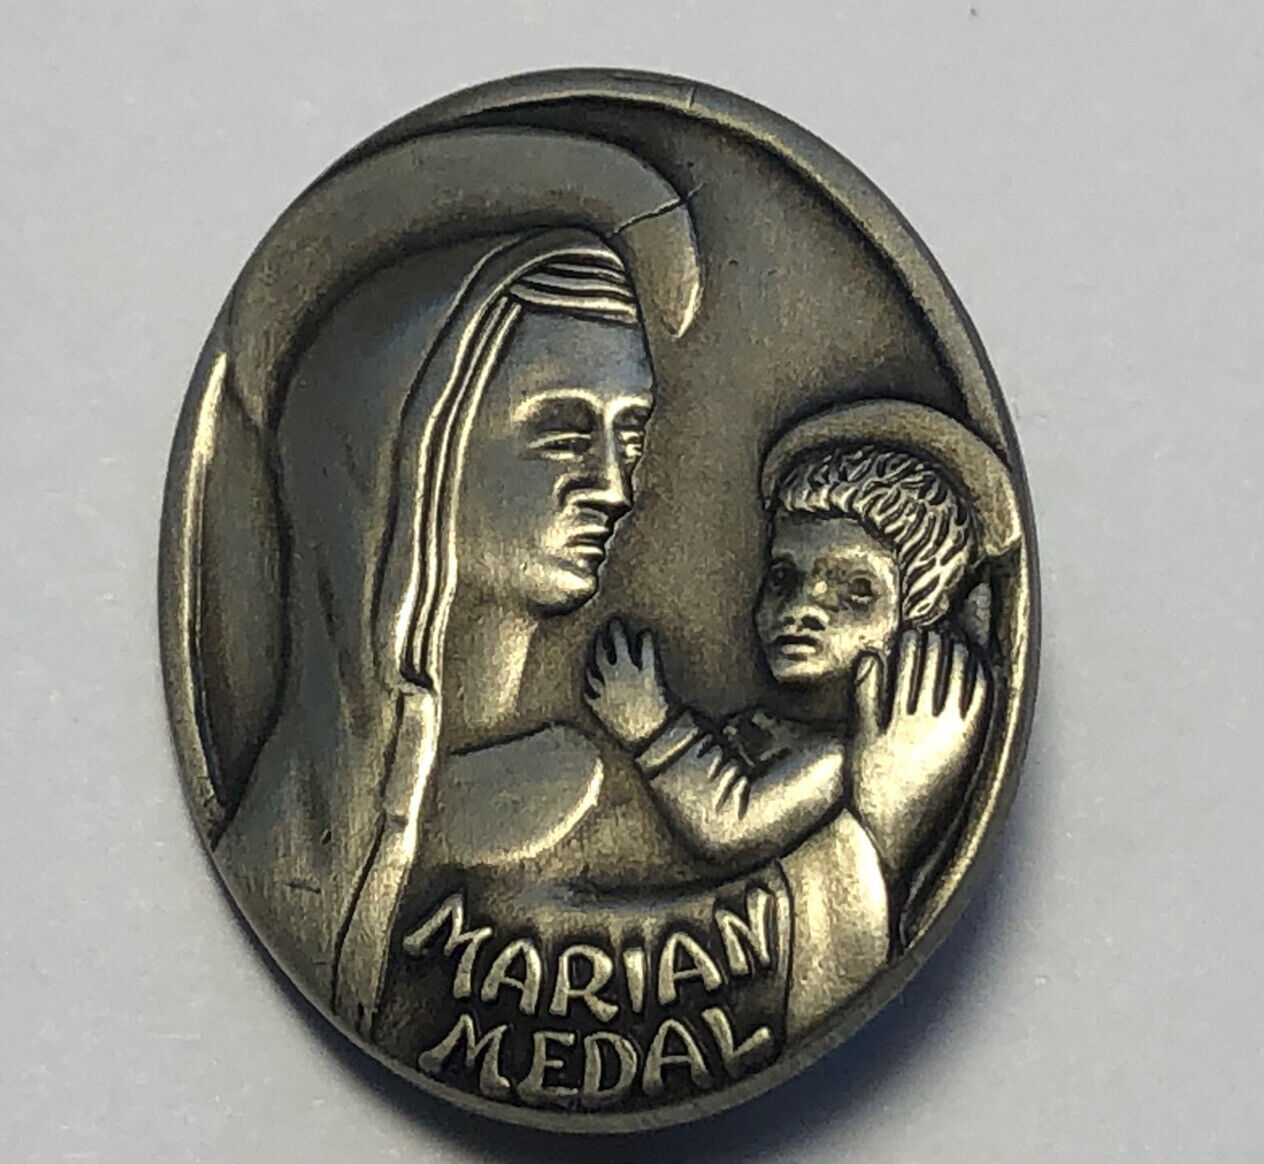 Vintage Marian Medal Brooch